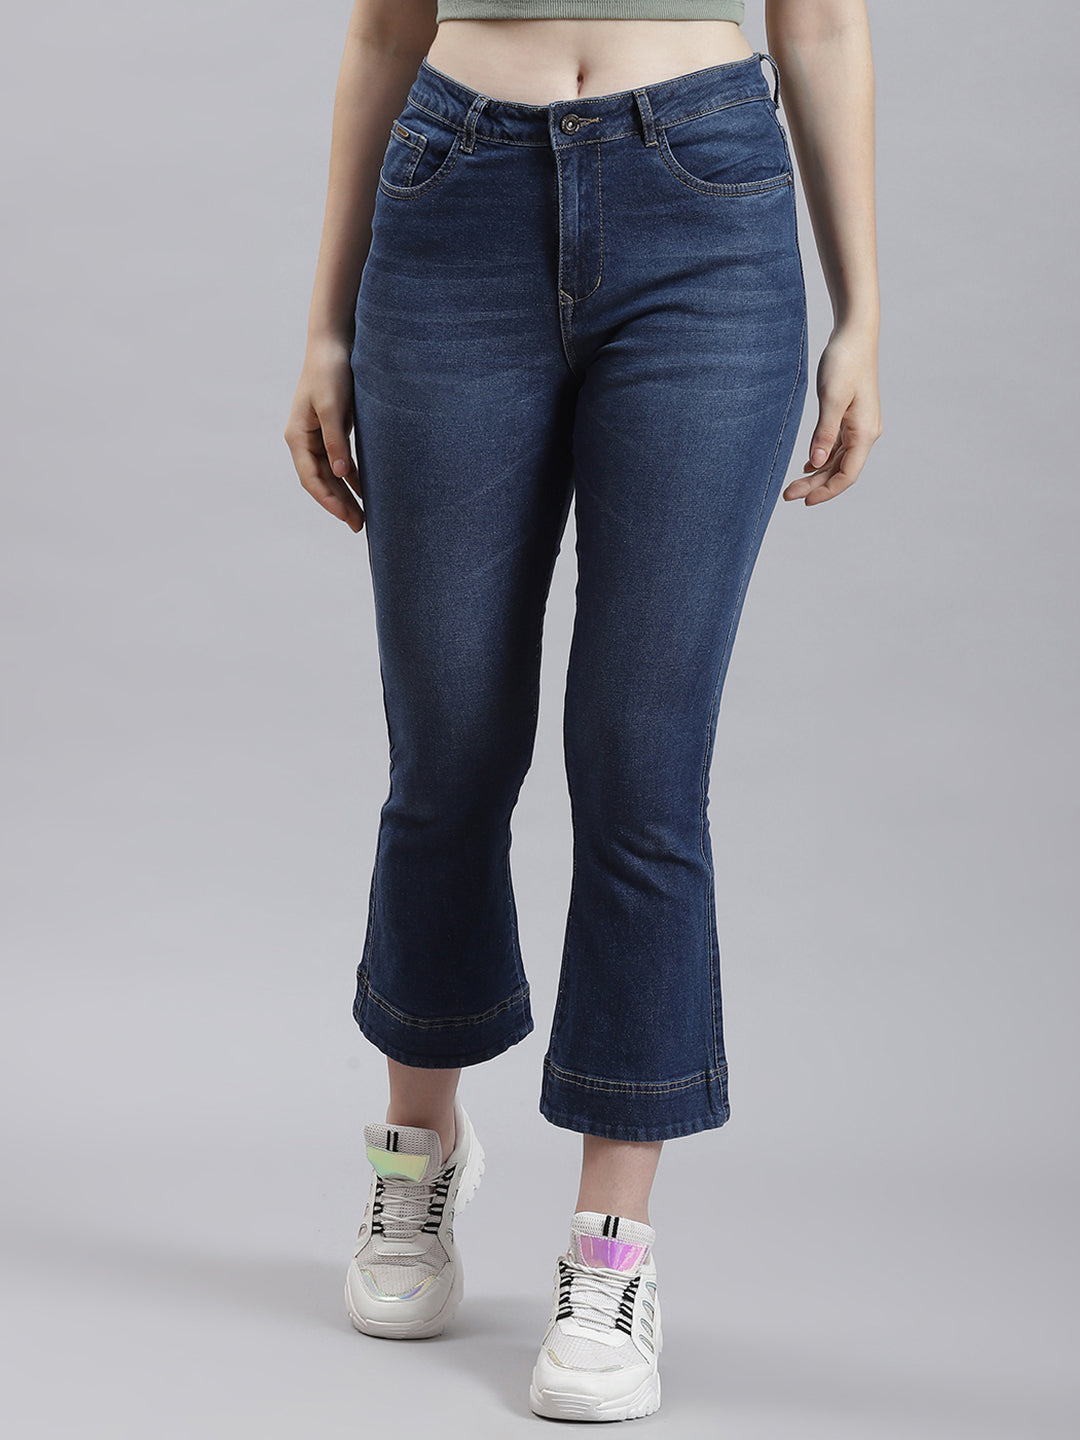 Slim Fit Jeans Women - Buy Slim Fit Jeans Women online in India